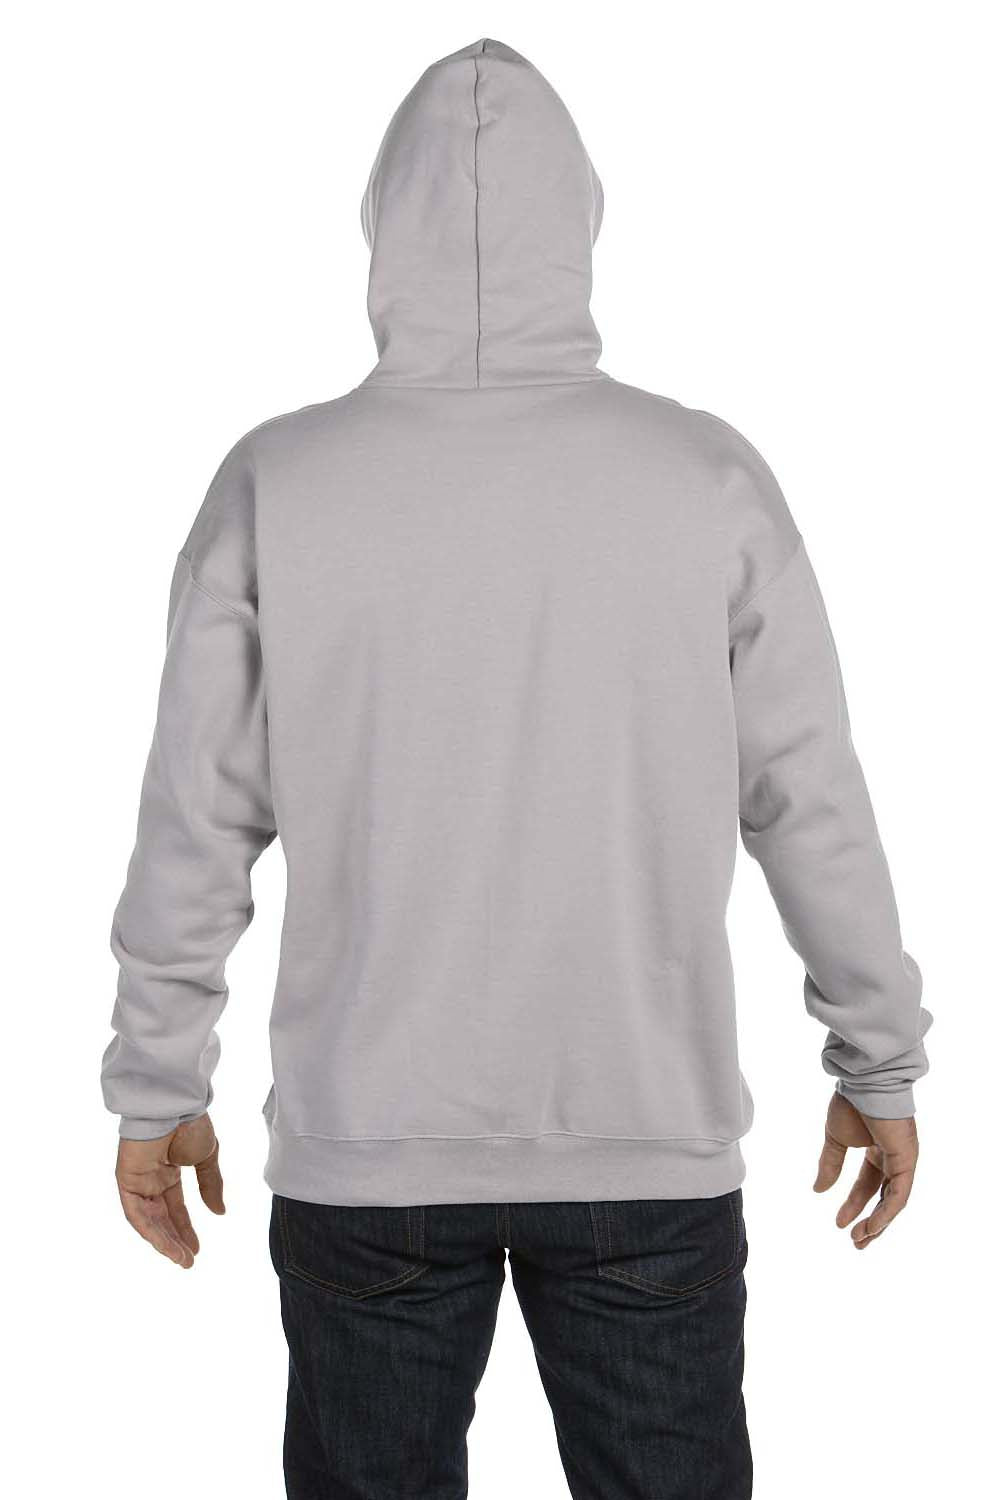 Hanes F170 Mens Ultimate Cotton PrintPro XP Hooded Sweatshirt Hoodie Light Steel Grey Back